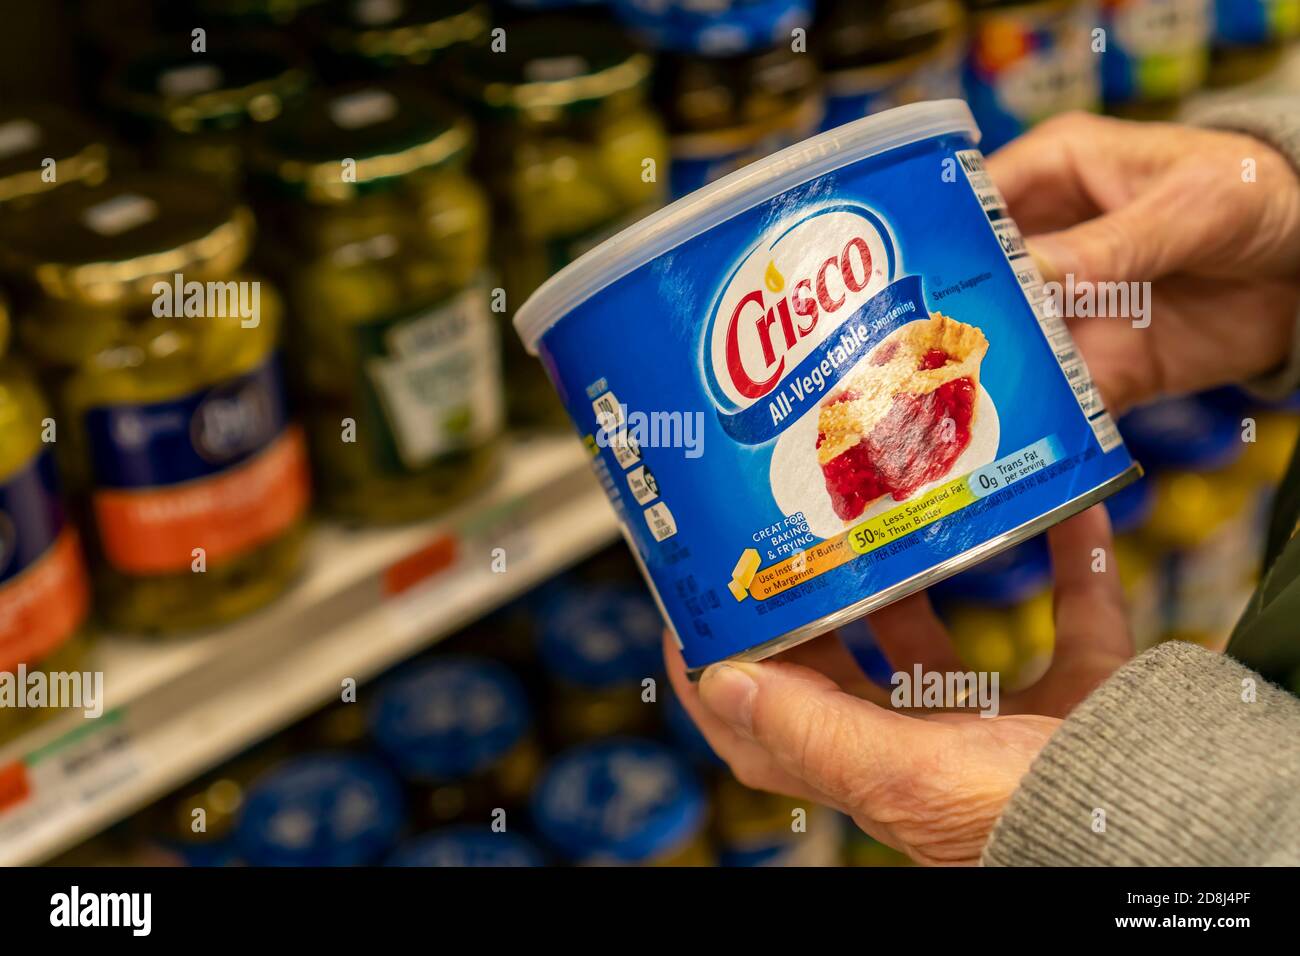 Am Dienstag, den 27. Oktober 2020, entscheidet sich ein Einkäufer für eine Dose Crisco-Gemüse-Kürzung in einem Supermarkt in New York. J.M. Smucker Co., der Eigentümer von Crisco, verkauft die legendäre Verkürzungsmarke an B&G Foods Inc, Eigentümer von über 50 Marken, darunter Green Giant und Cream of Wheat, in einem All-Cash-Deal mit einem Wert von 550 Millionen US-Dollar. (© Richard B. Levine) Stockfoto